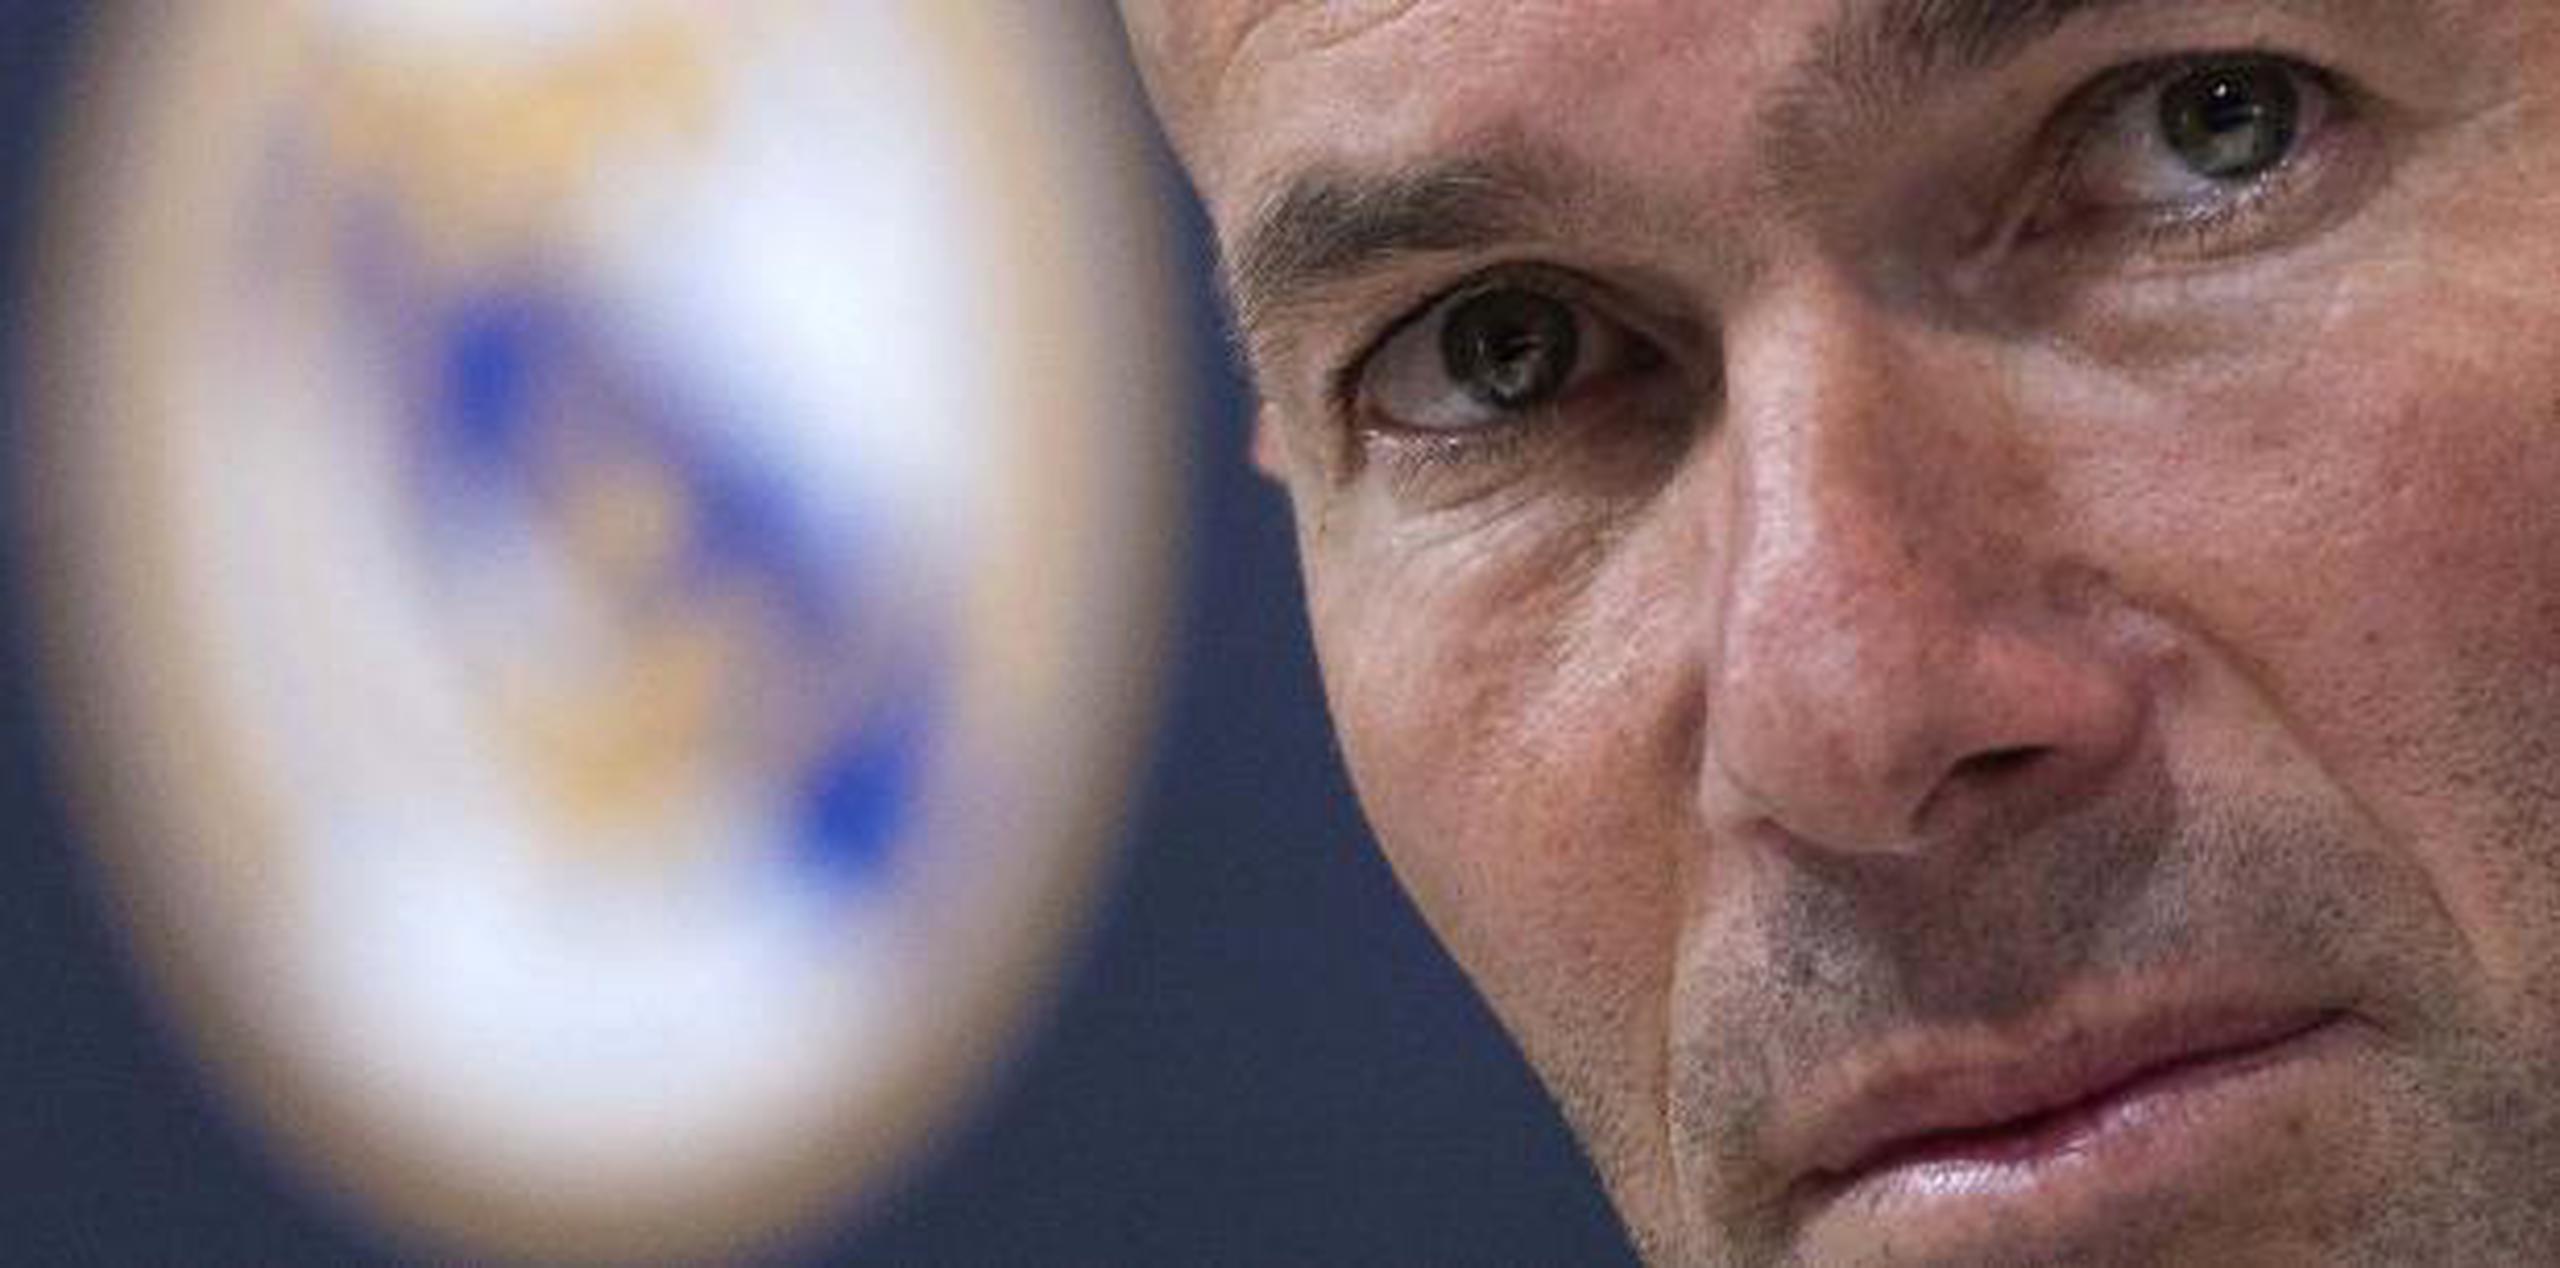 Zidane dijo el jueves que sentía que era el momento adecuado, para él y para el club, para hacer un cambio.  (Archivo)

